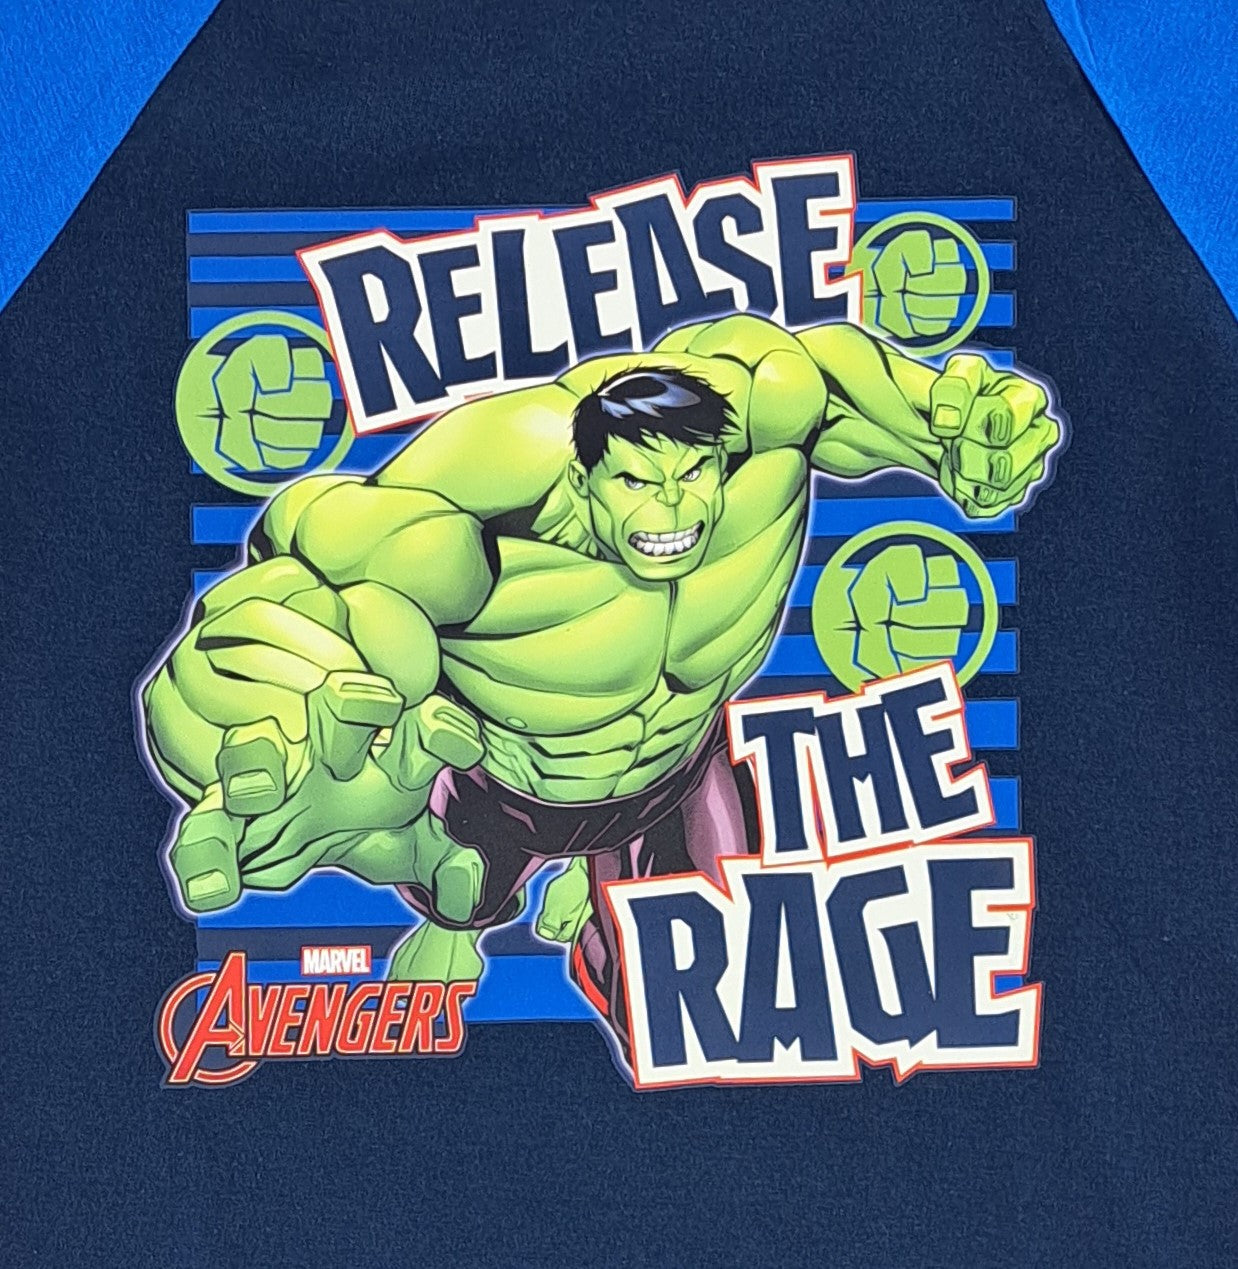 The Hulk "Release The Rage" Boys Shortie Pyjamas